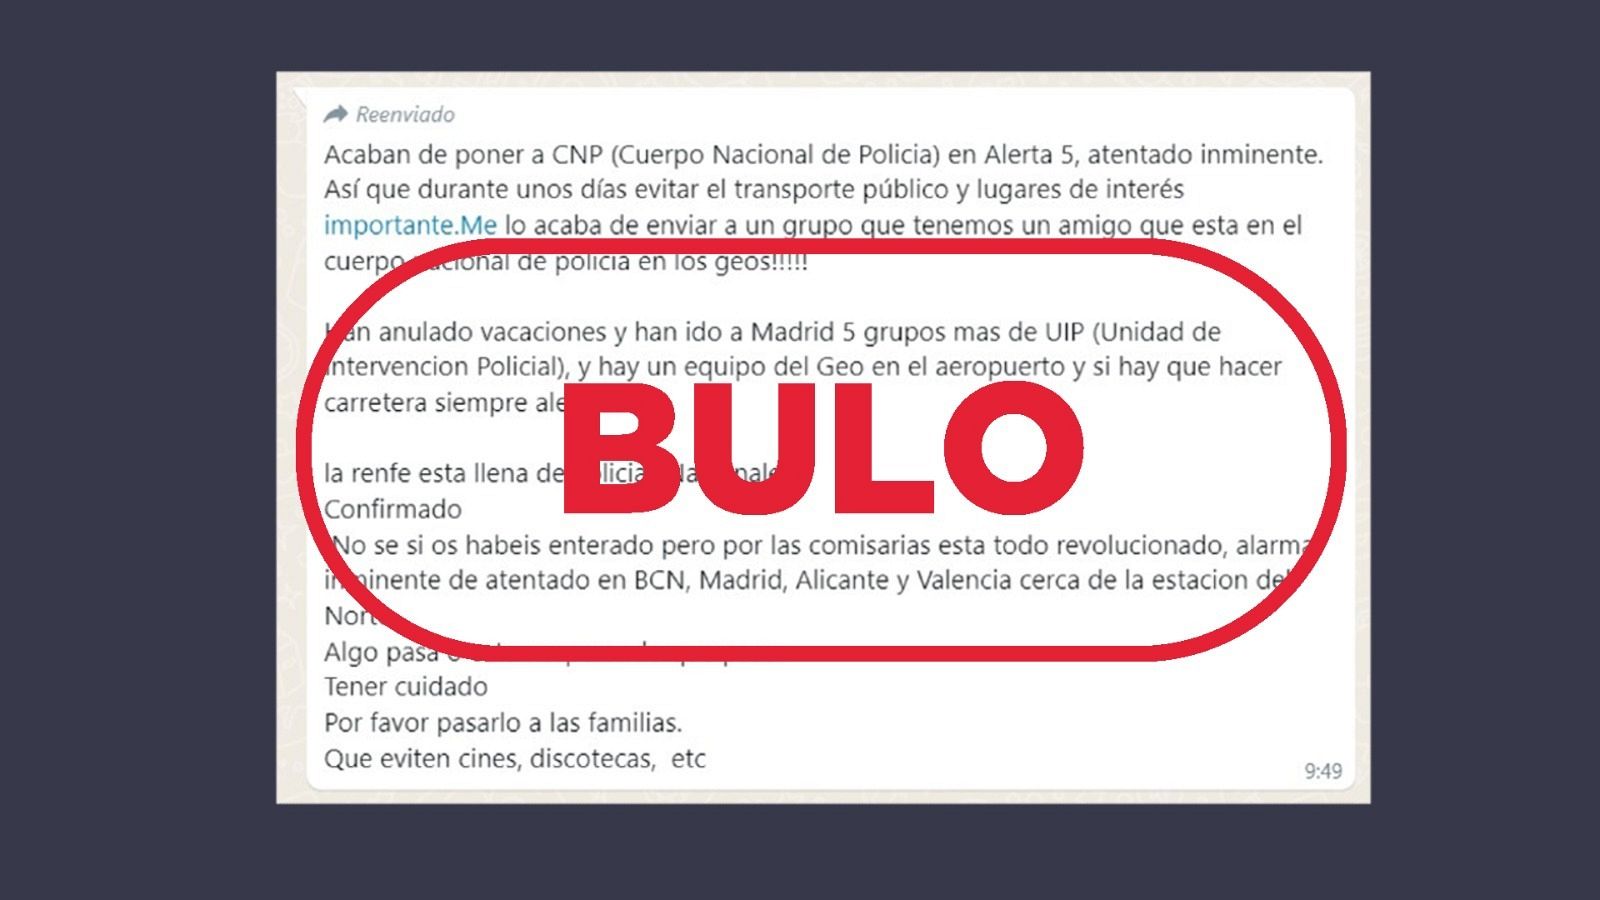 Alerta antiterrorista en España: Mensaje de WhatsApp que difunde la falsa idea de que España está en nivel 5 por alerta antiterrorista, con el sello Bulo en rojo de VerificaRTVE.